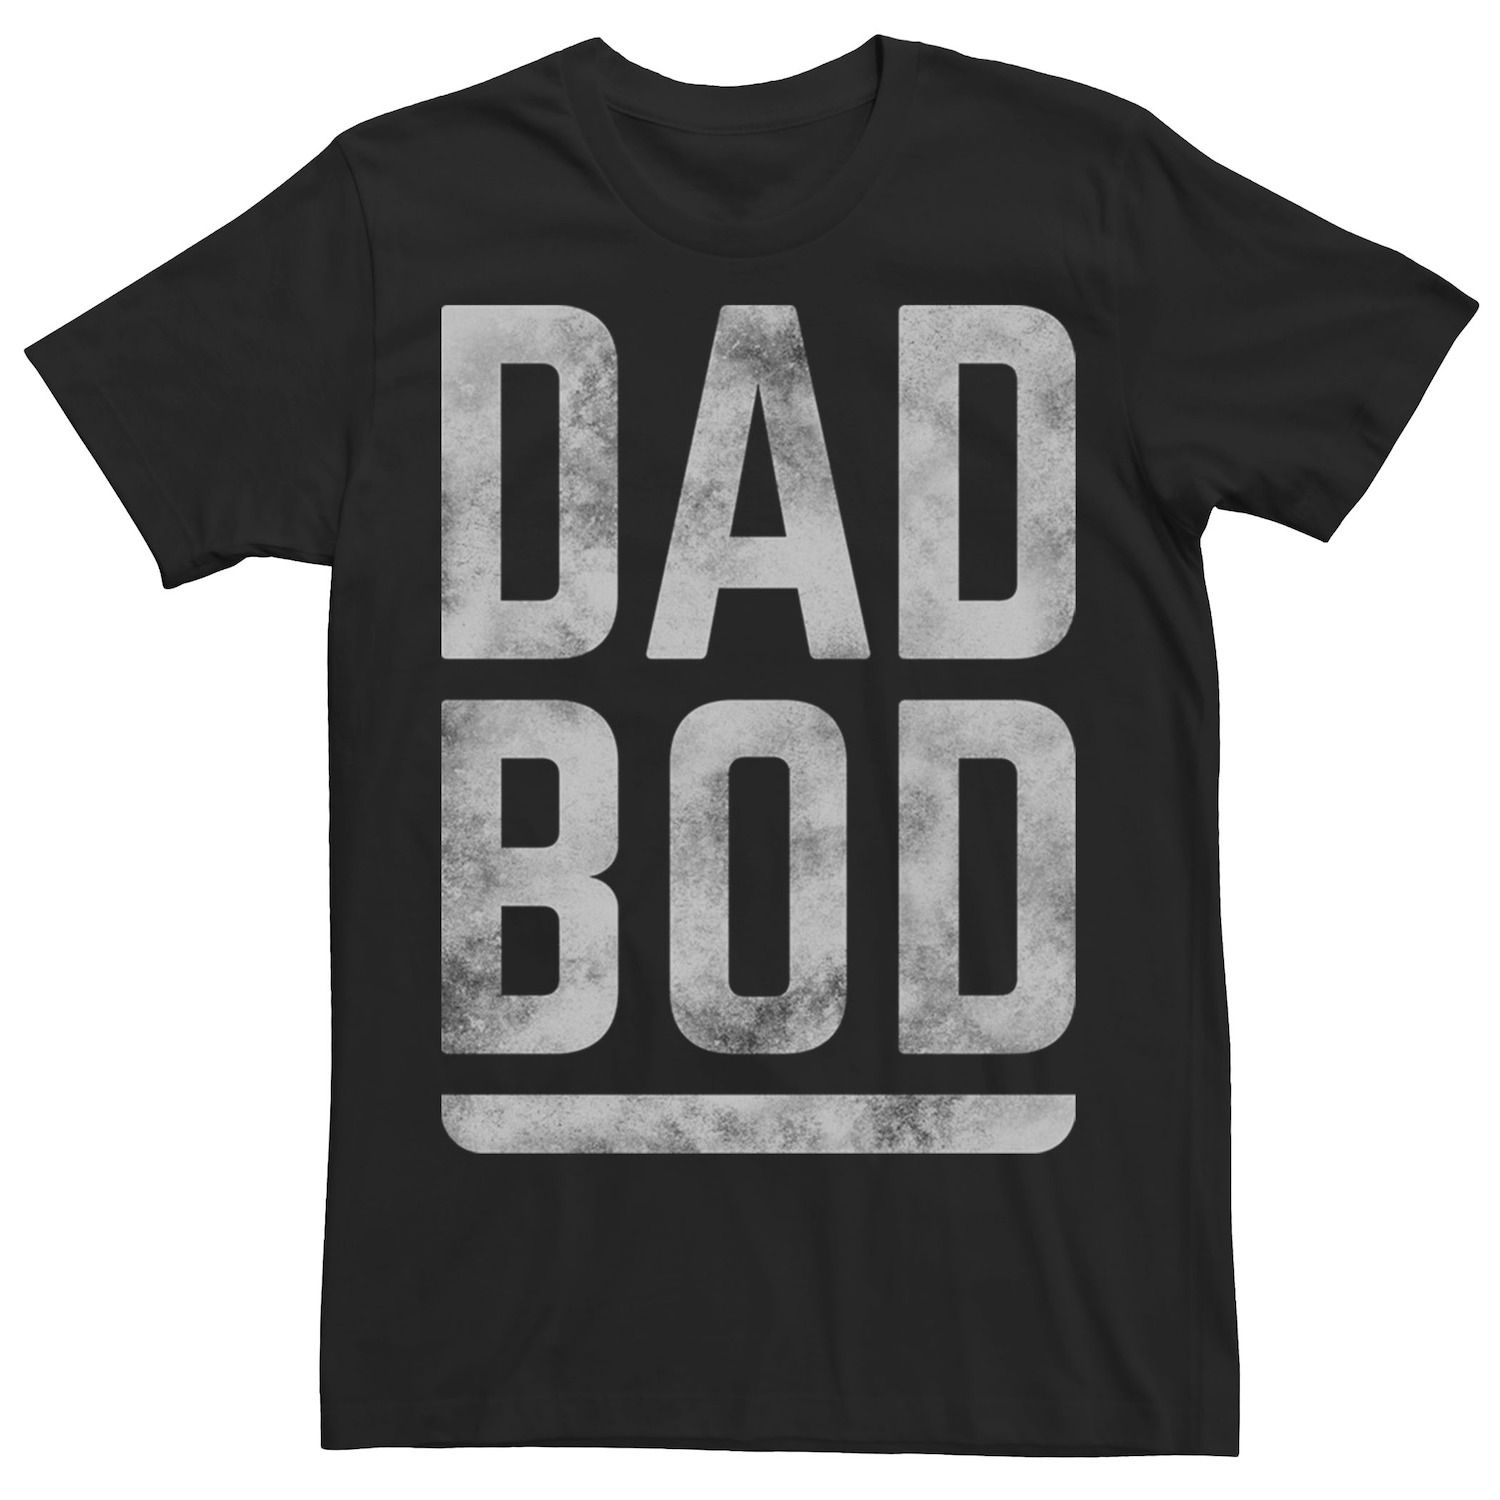 Мужская футболка с рисунком Dad Bod ко Дню отца Licensed Character